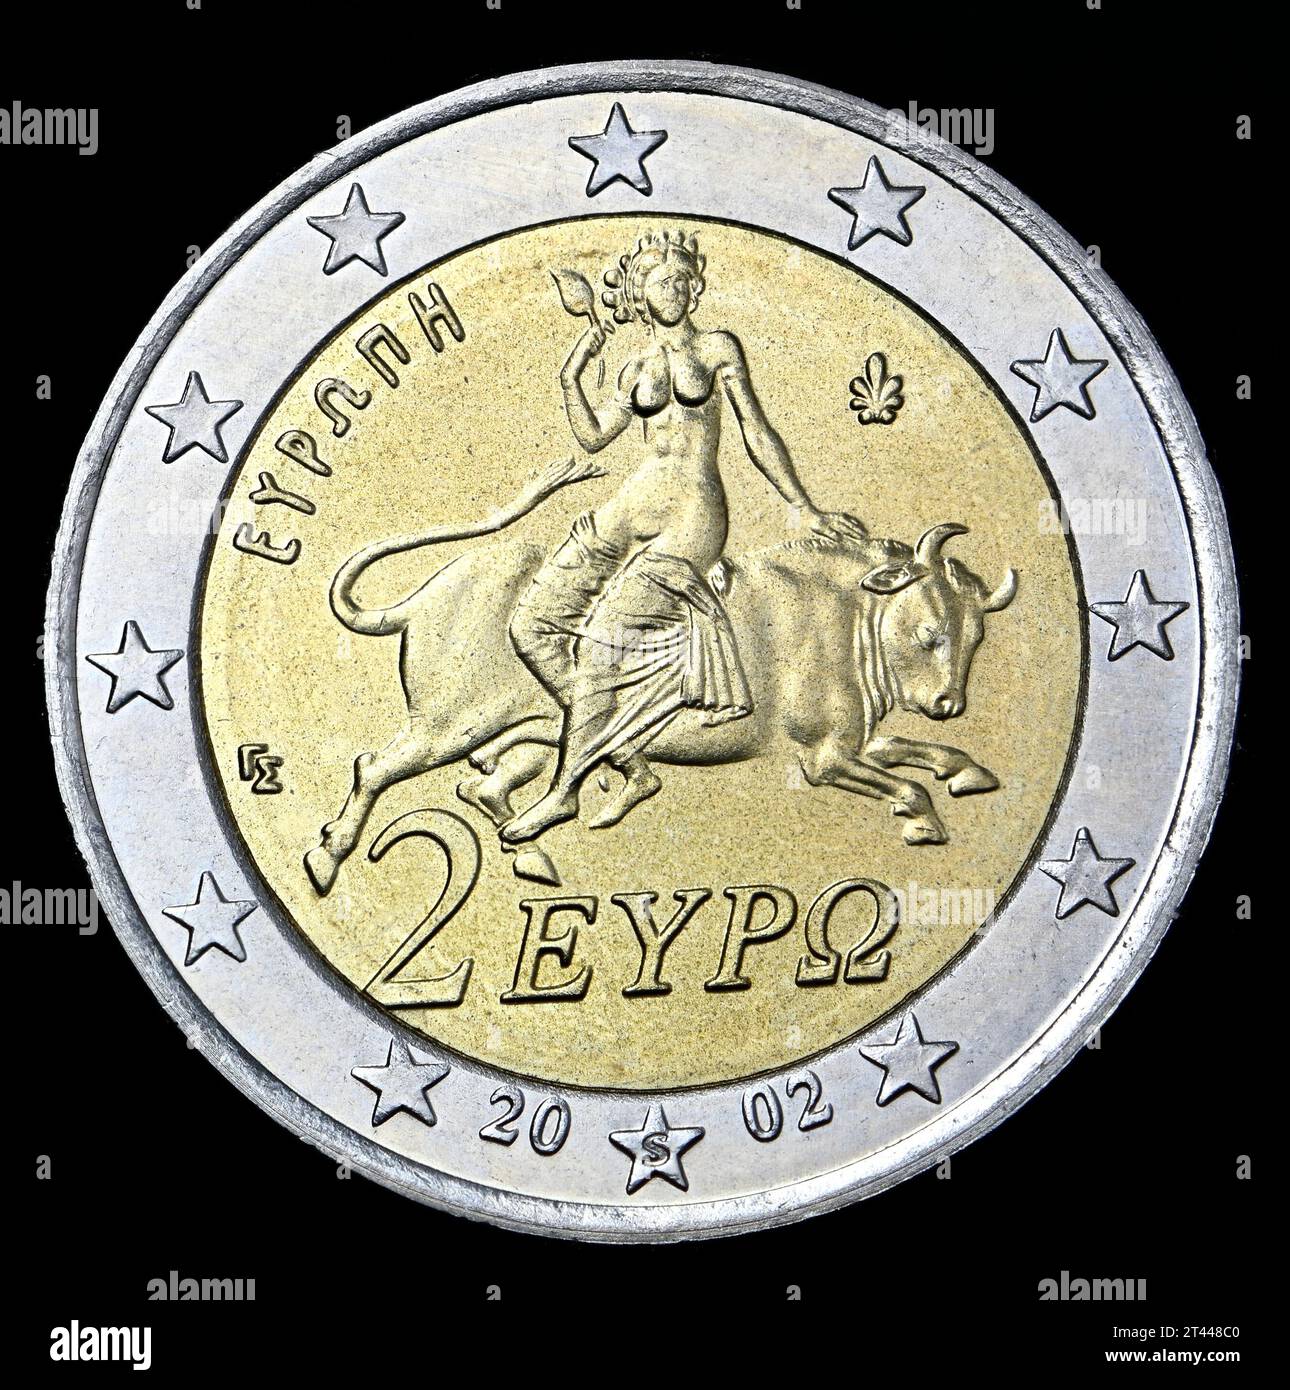 Moneda griega de 2 euros - el secuestro de Europa por Zeus en forma de toro Foto de stock